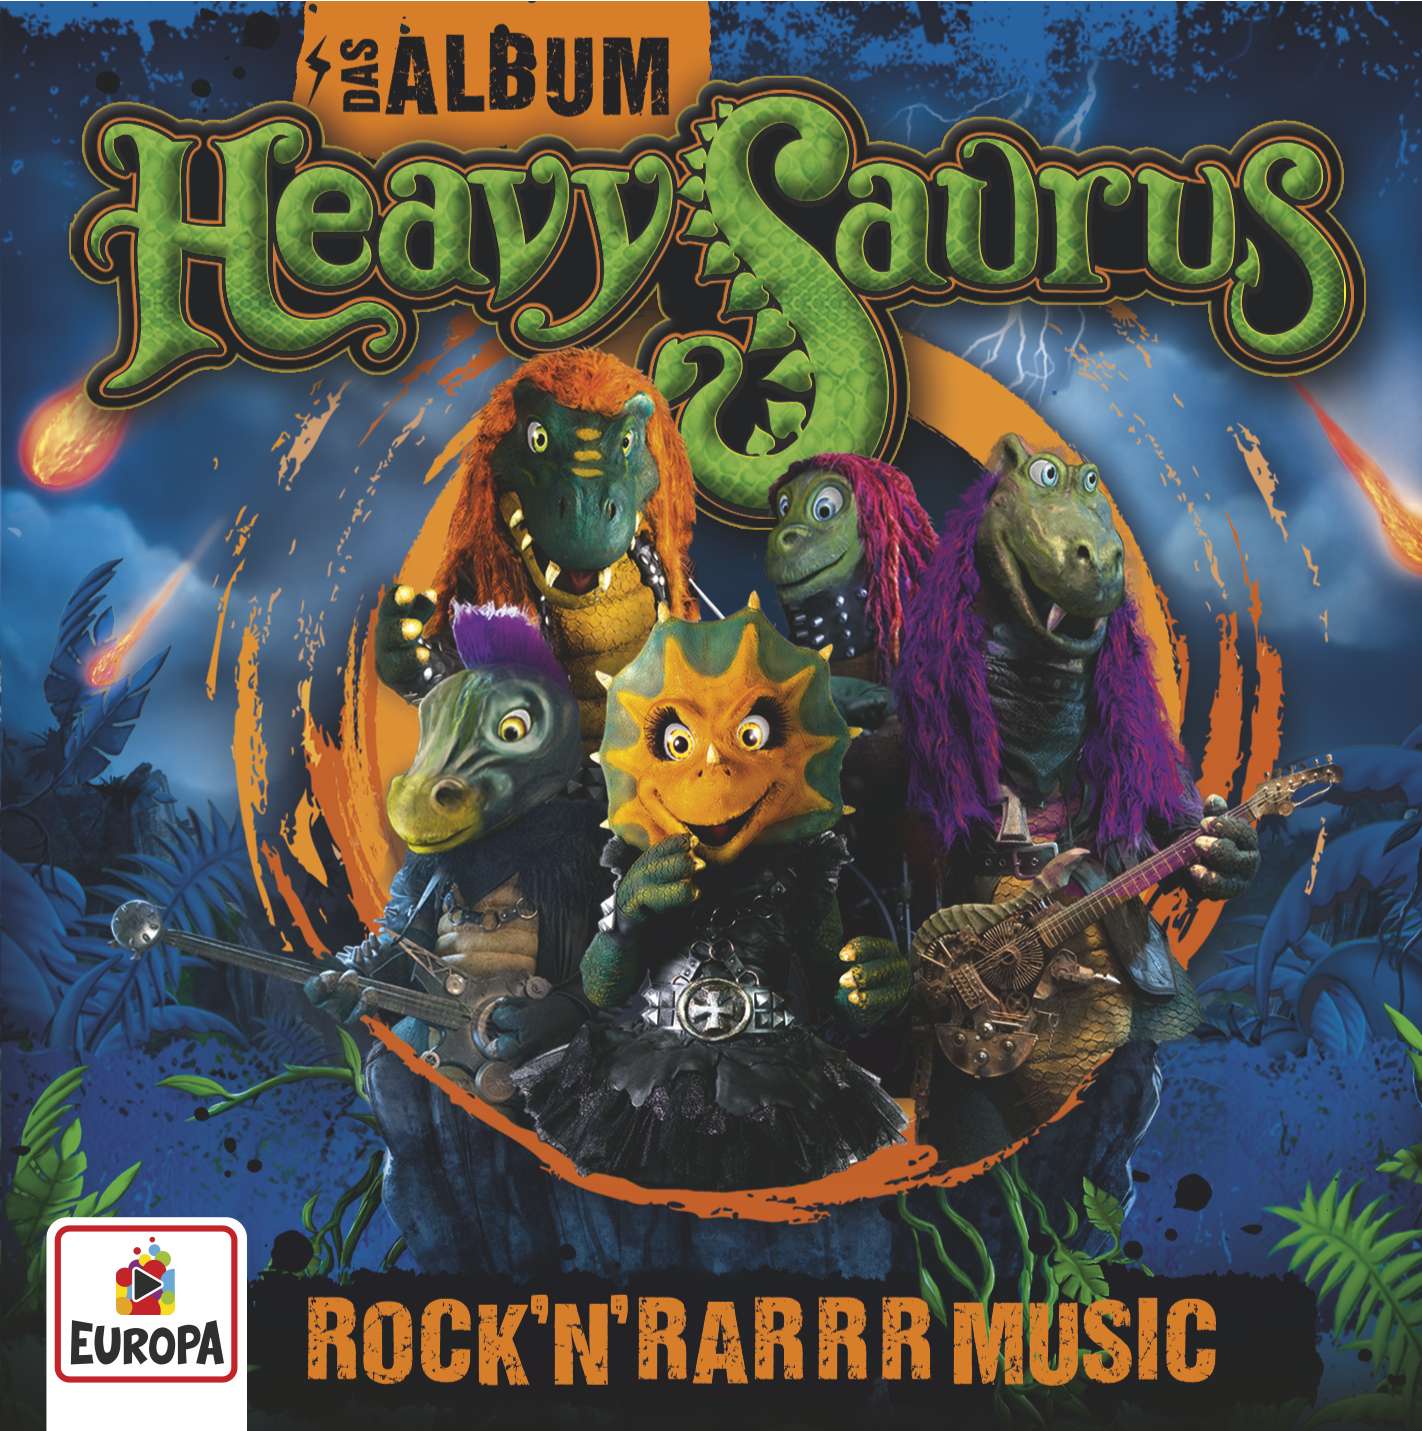 Heavysaurus: Das Album - Rock'n'Rarrr Music